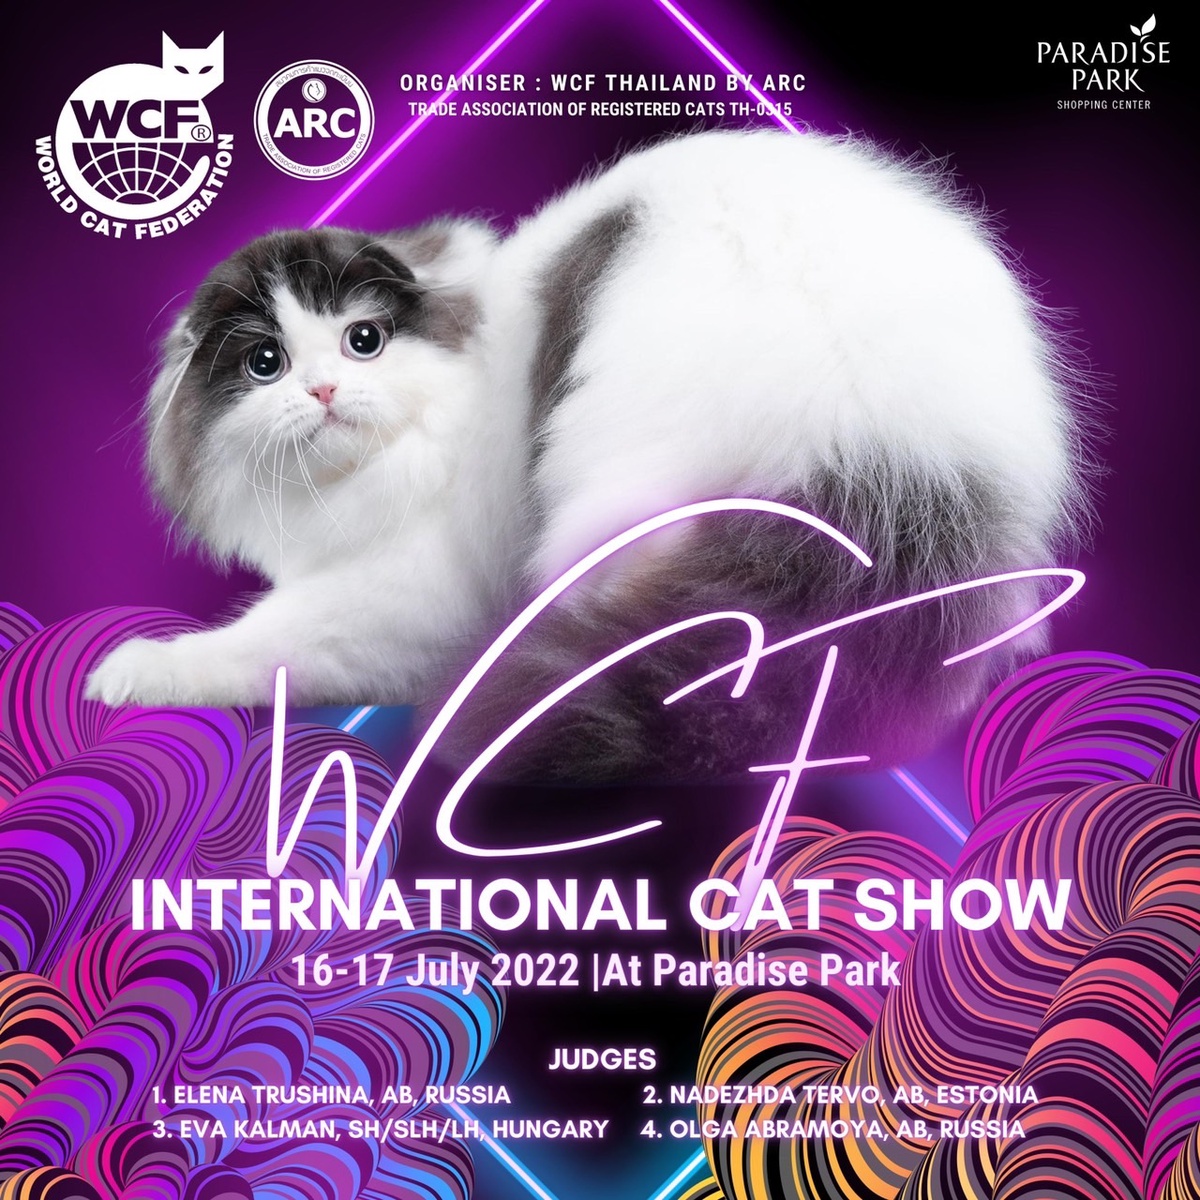 ทาสแมวต้องมา!! พาราไดซ์ พาร์ค ชวนมางานประกวดแมวสวยงาม WCF International Cat Show และกิจกรรมสารพัดของน้องแมว 16-17 ก.ค.